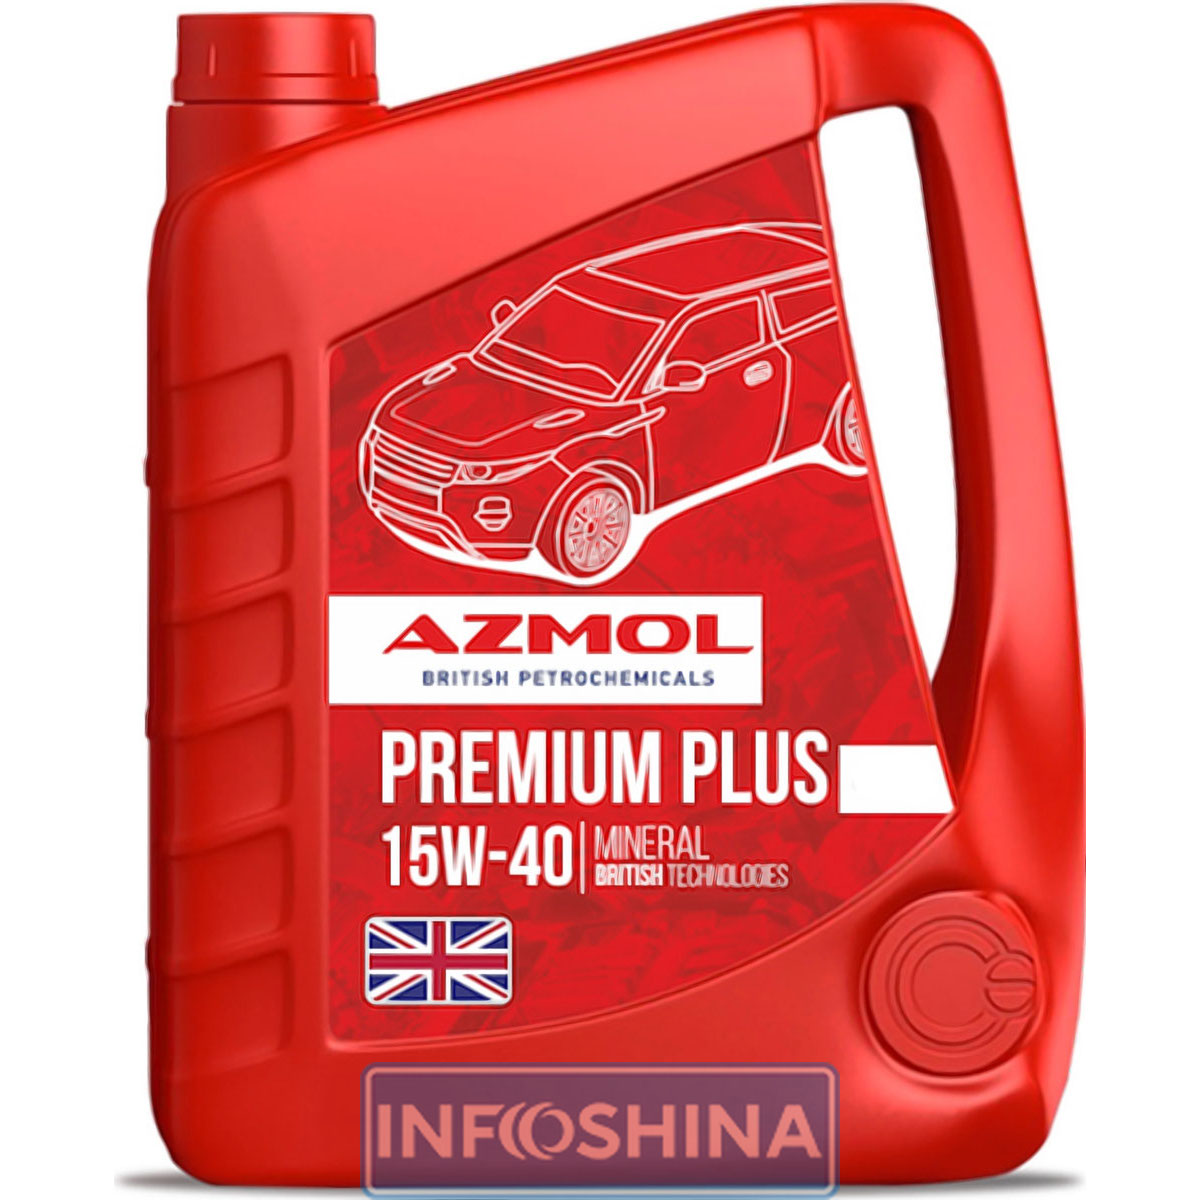 Azmol Premium Plus 15W-40